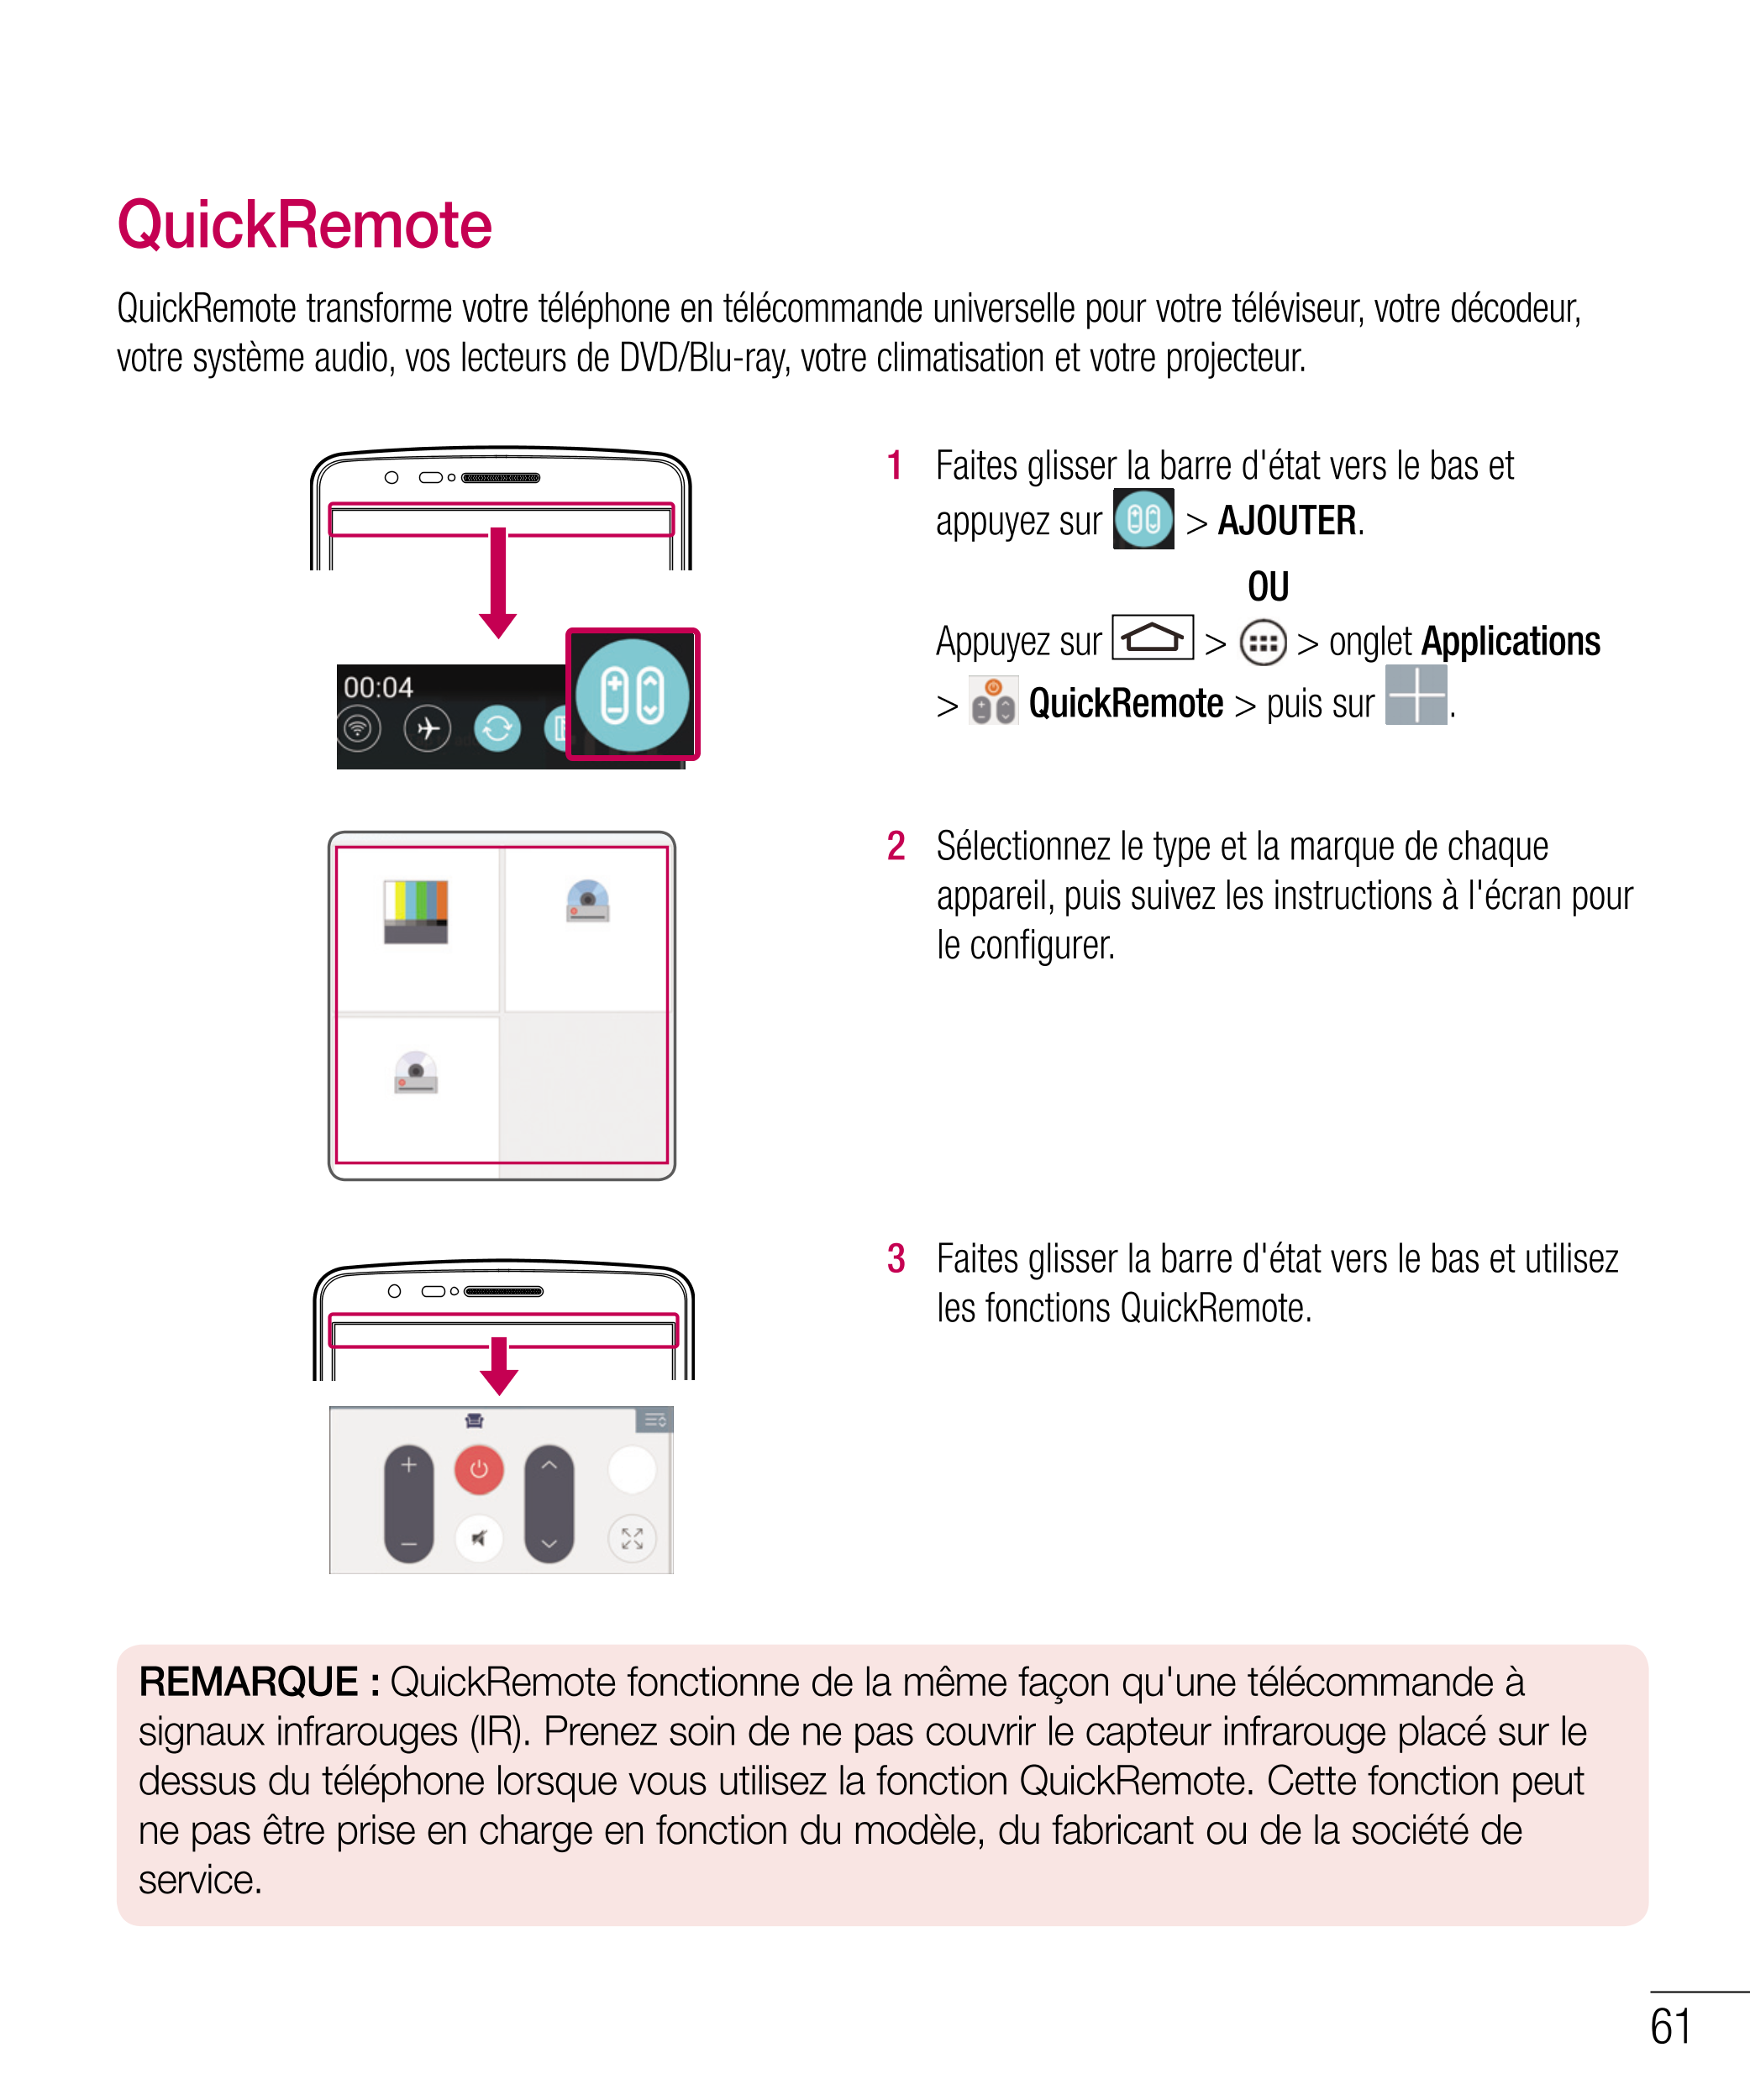 QuickRemote
QuickRemote transforme votre téléphone en télécommande universelle pour votre téléviseur, votre décodeur, 
votre sys